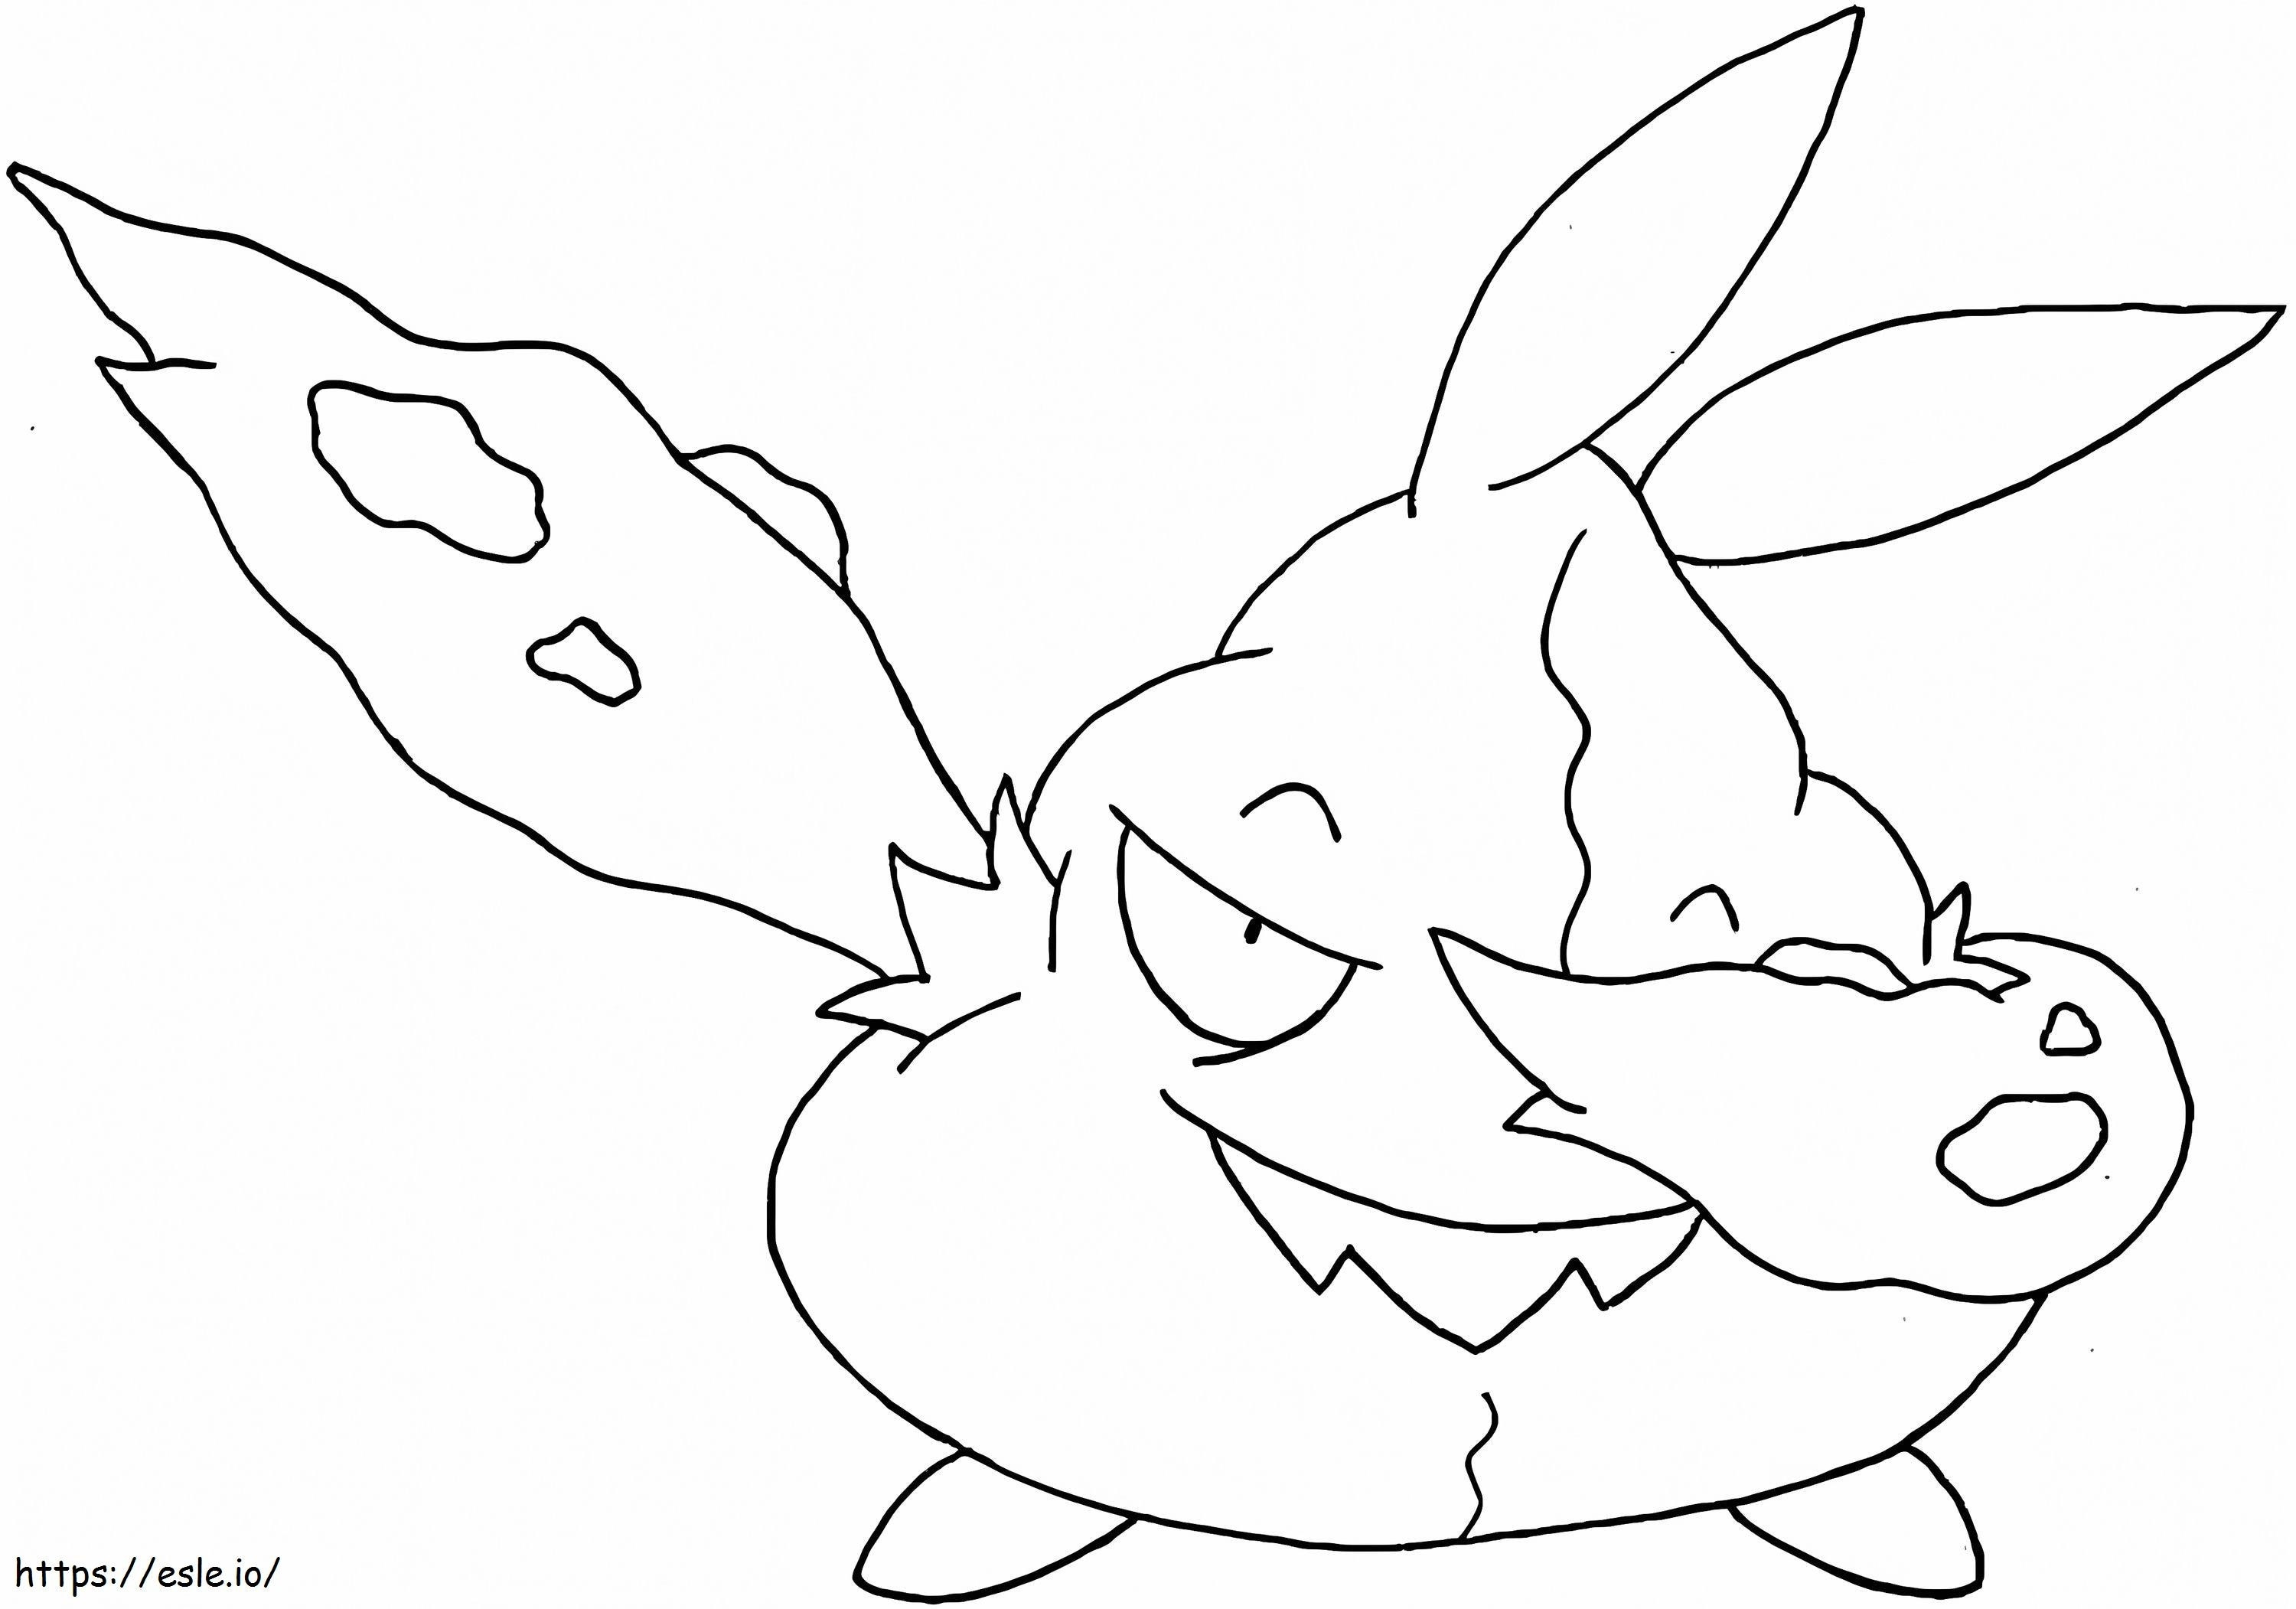 Trubbish Pokemon 4 coloring page